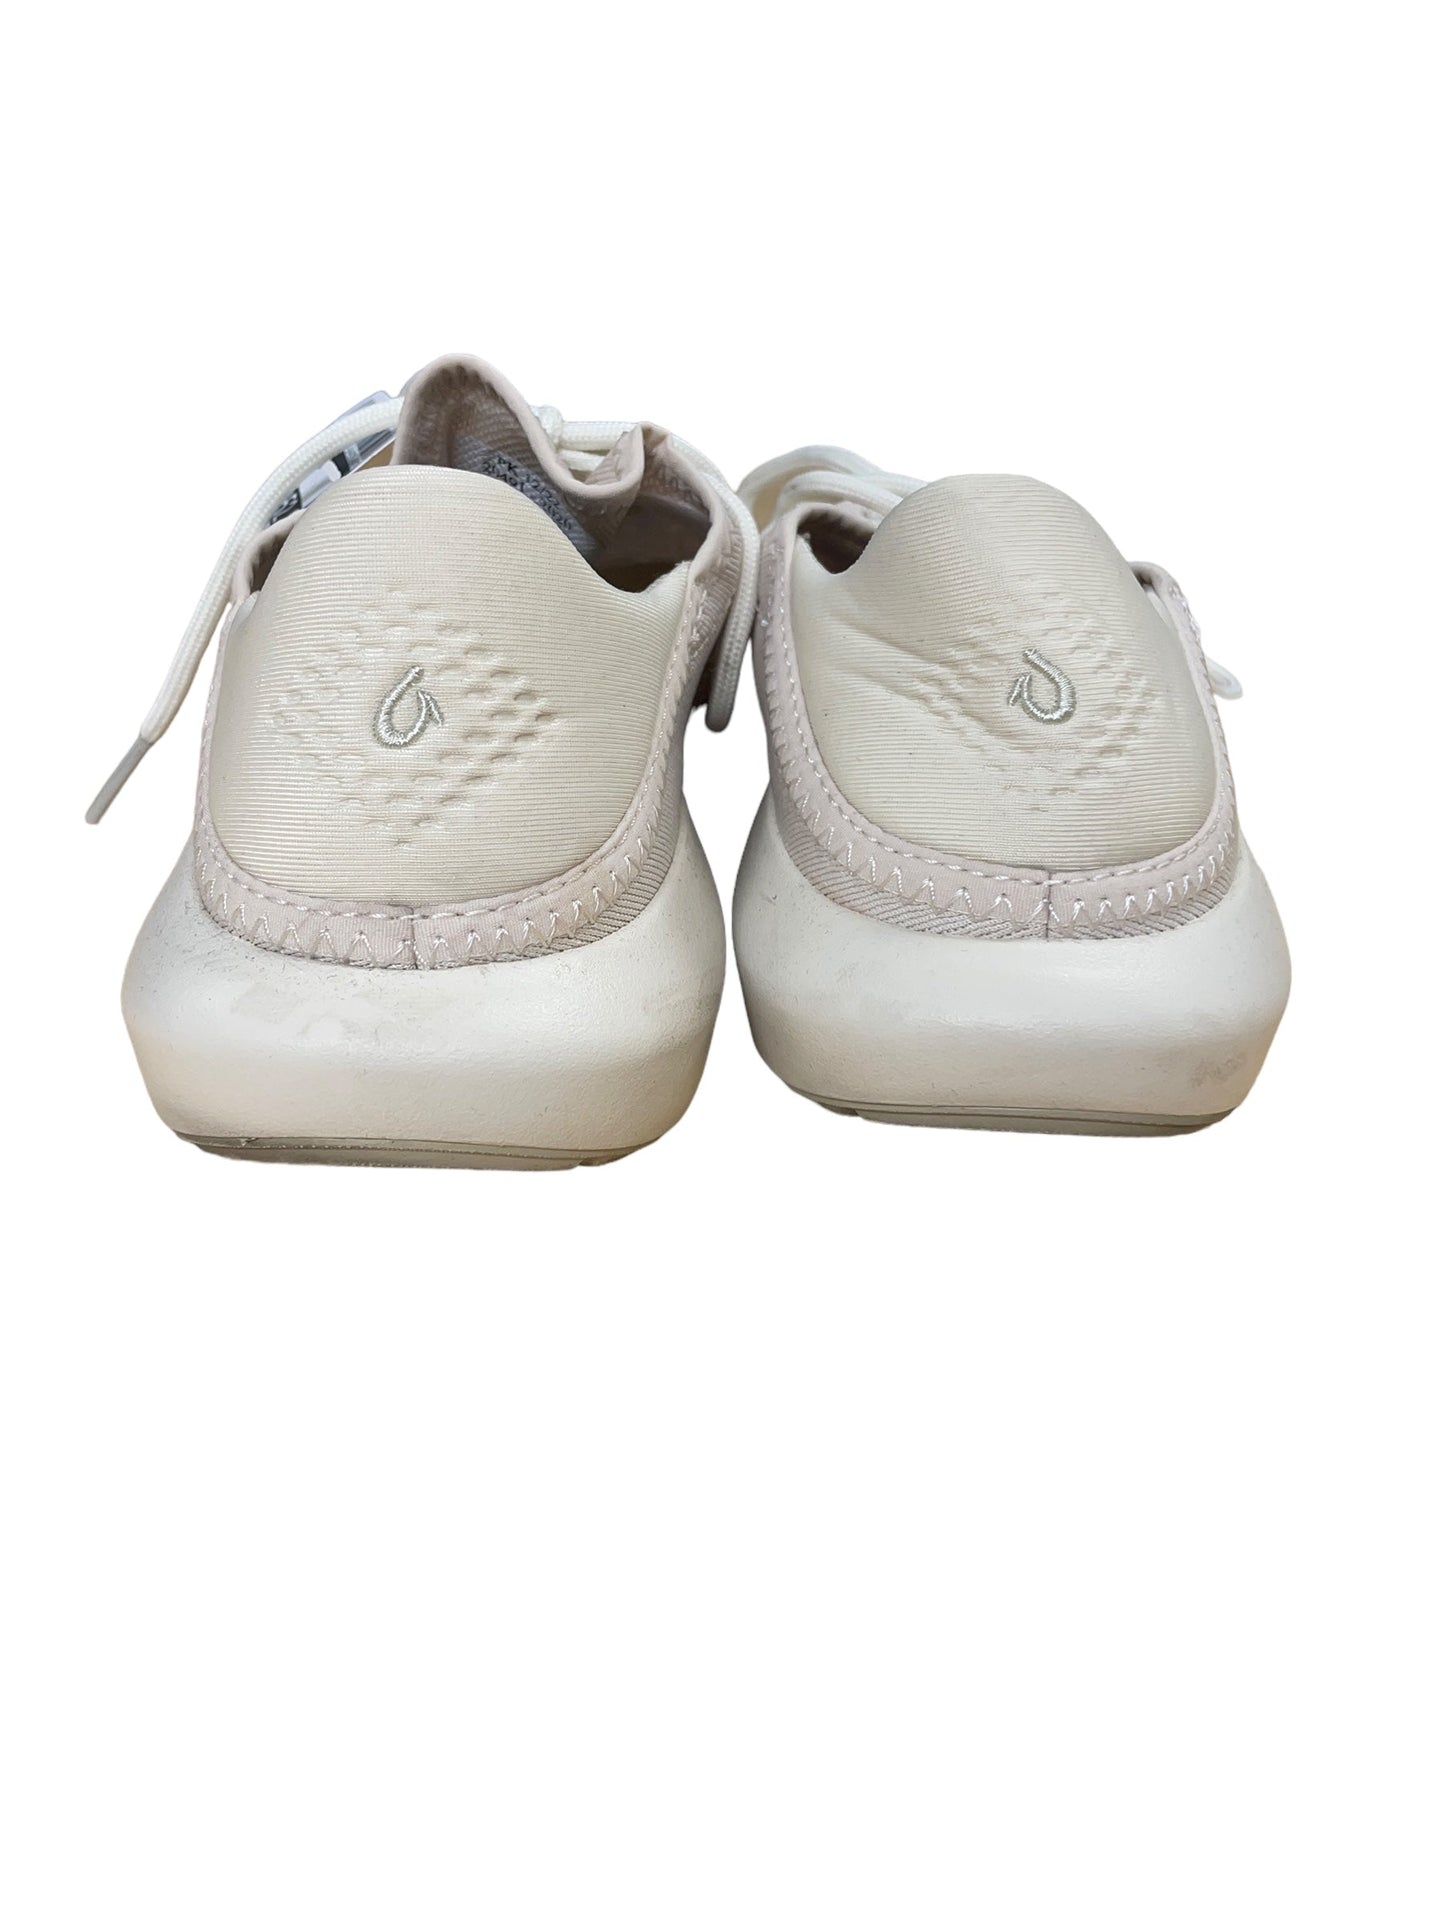 Cream Shoes Athletic Olukai, Size 8